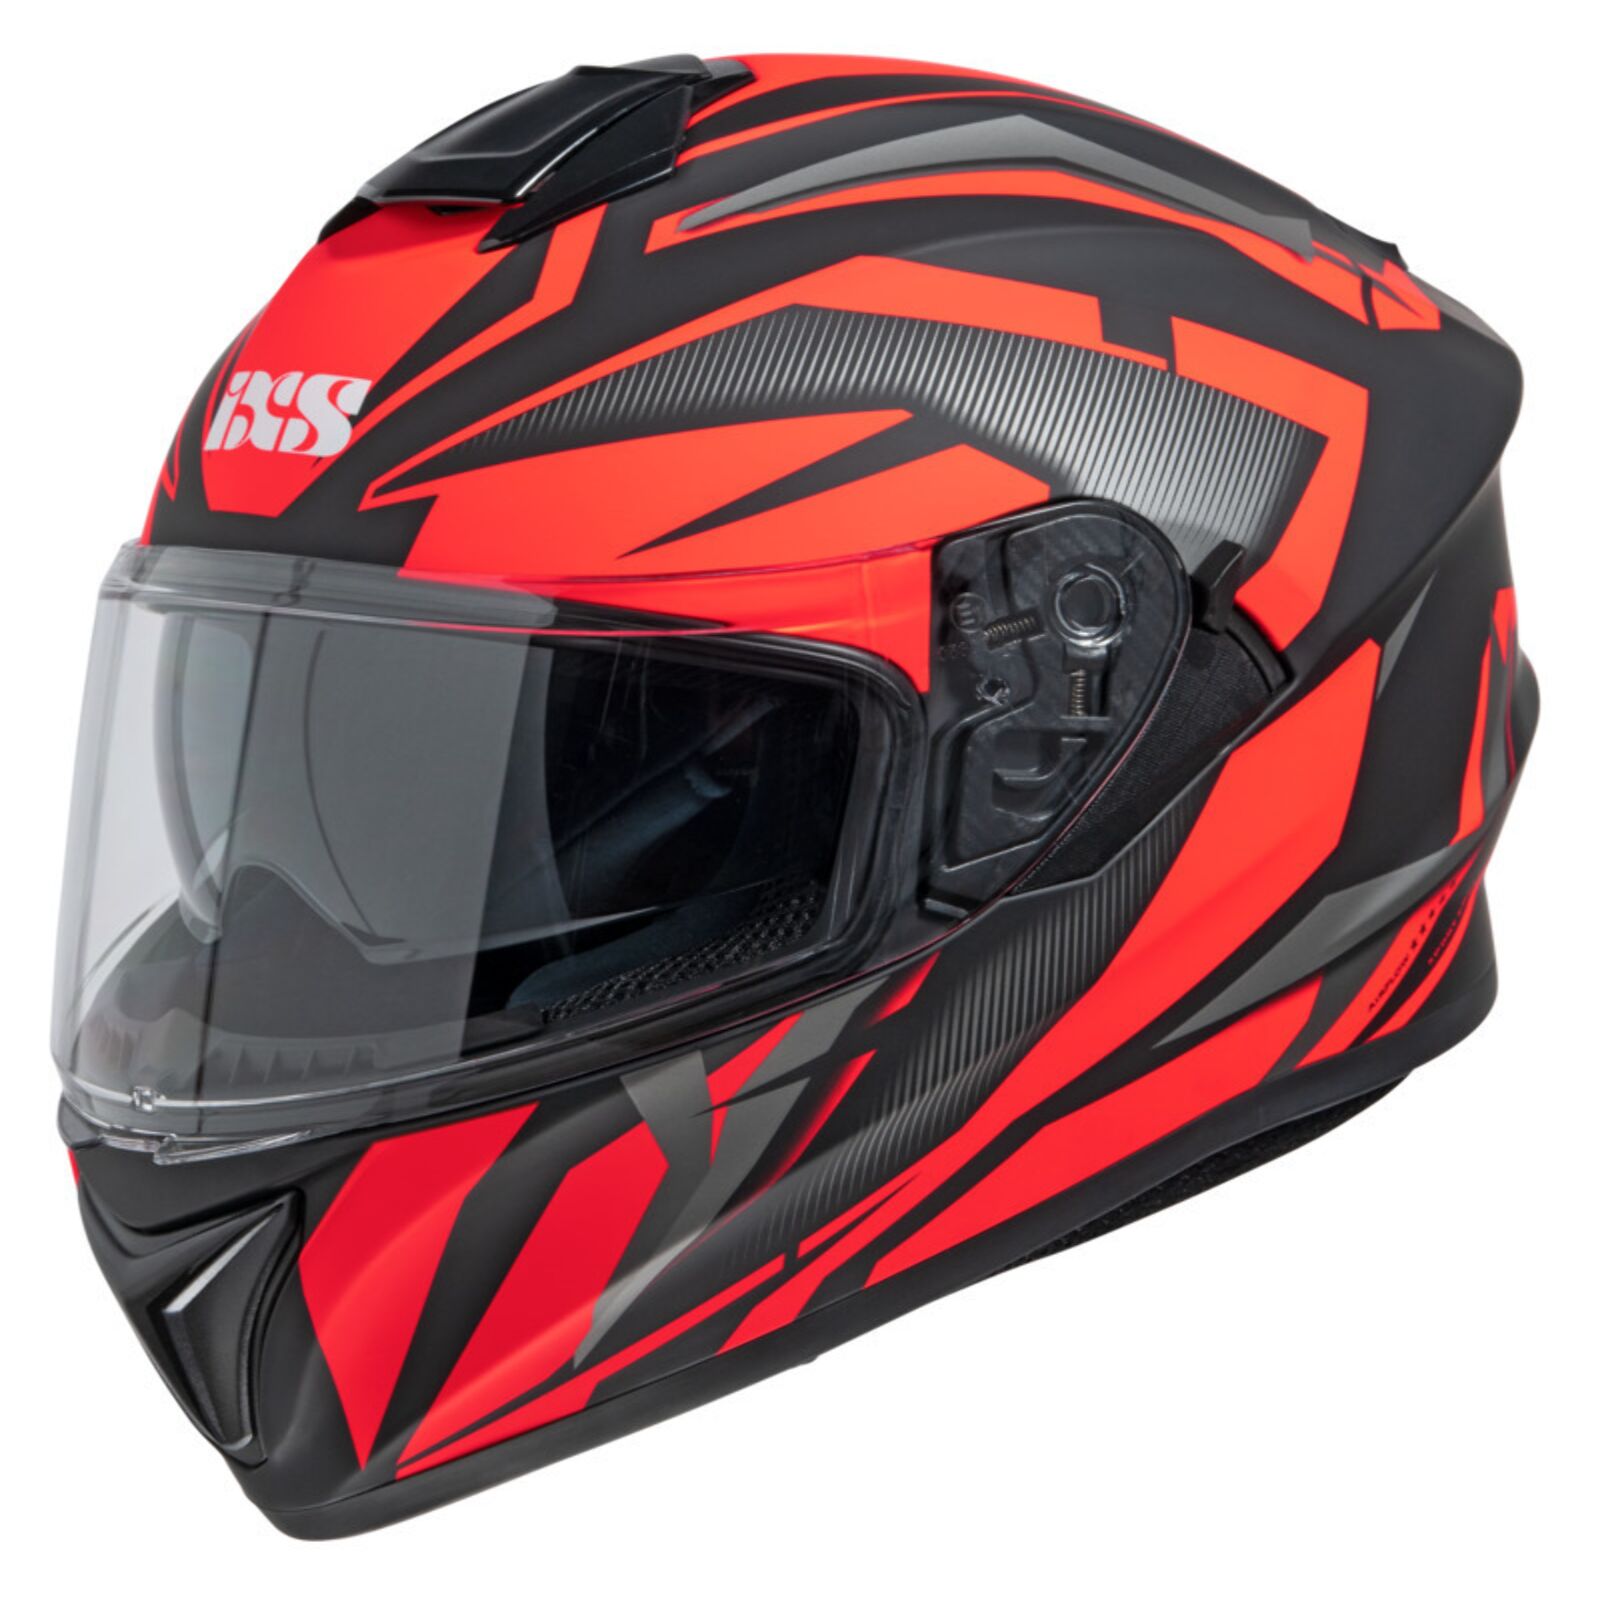 Obrázek produktu Integrální helma iXS iXS216 2.1 X14080 matná černá-červená S X14080-M32-S